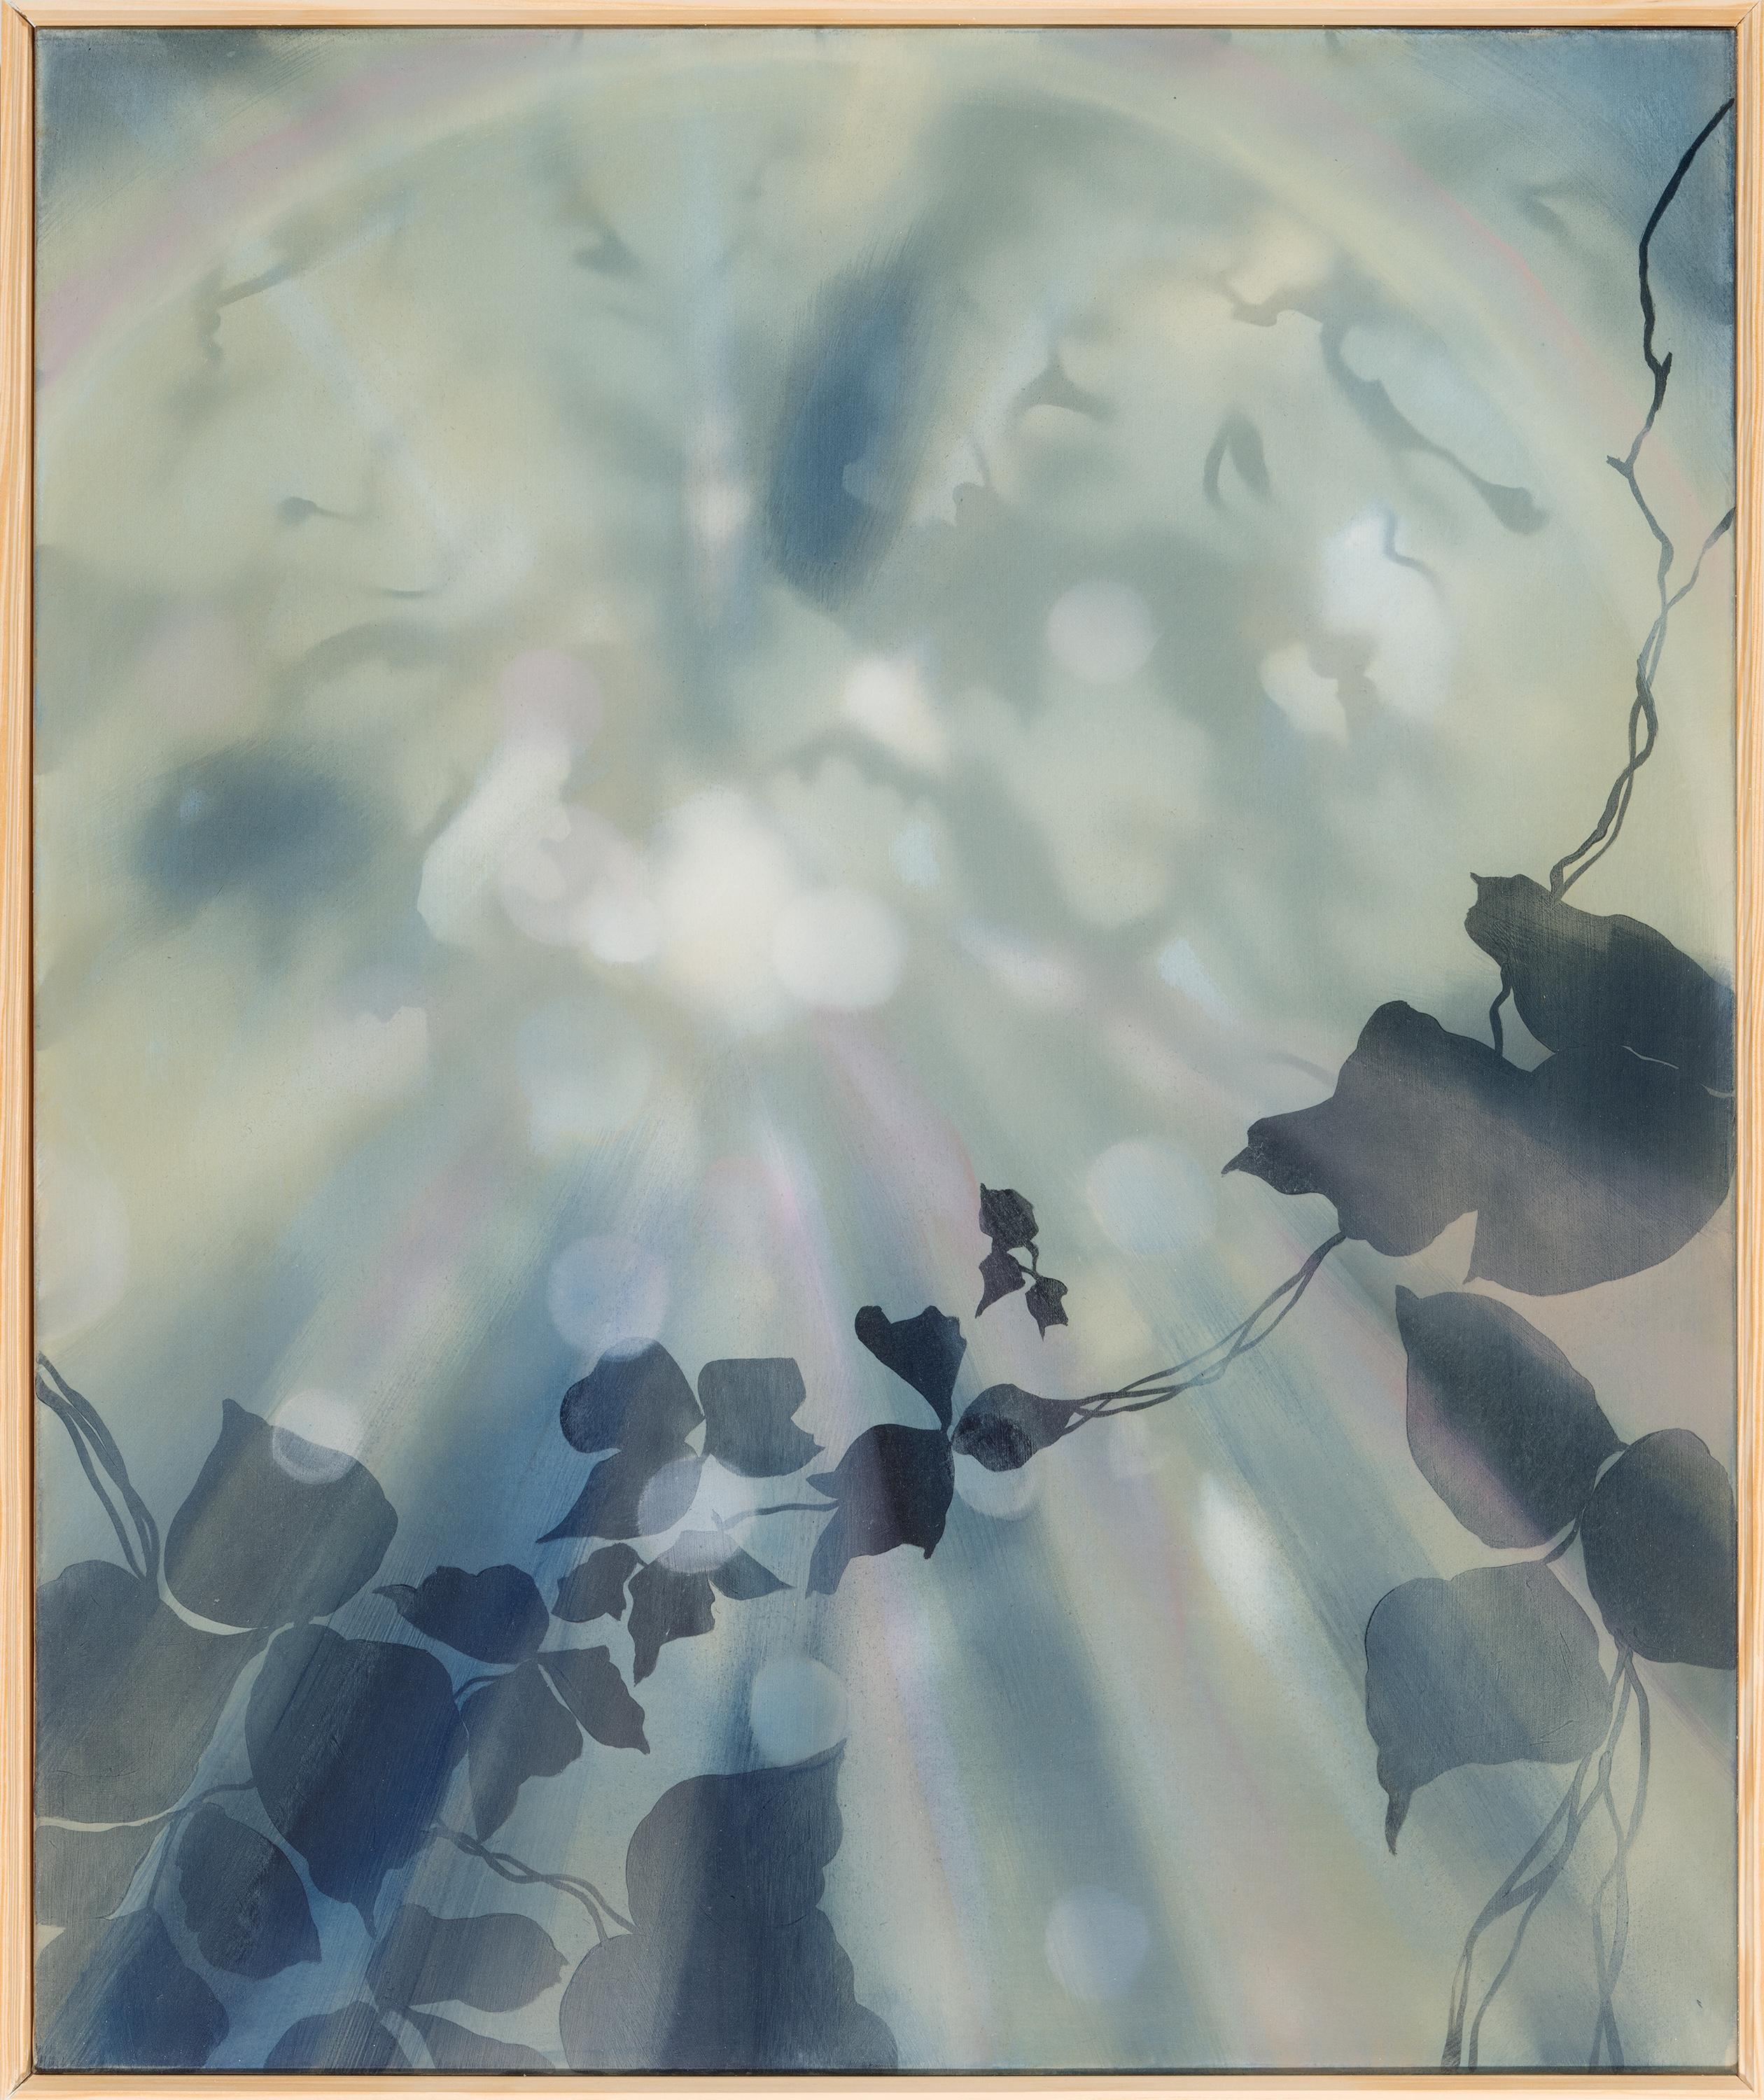 CREEPING AND CLIMBING - Blau, Marine, Gemälde von Licht, Natur, Kudzu-Vines 